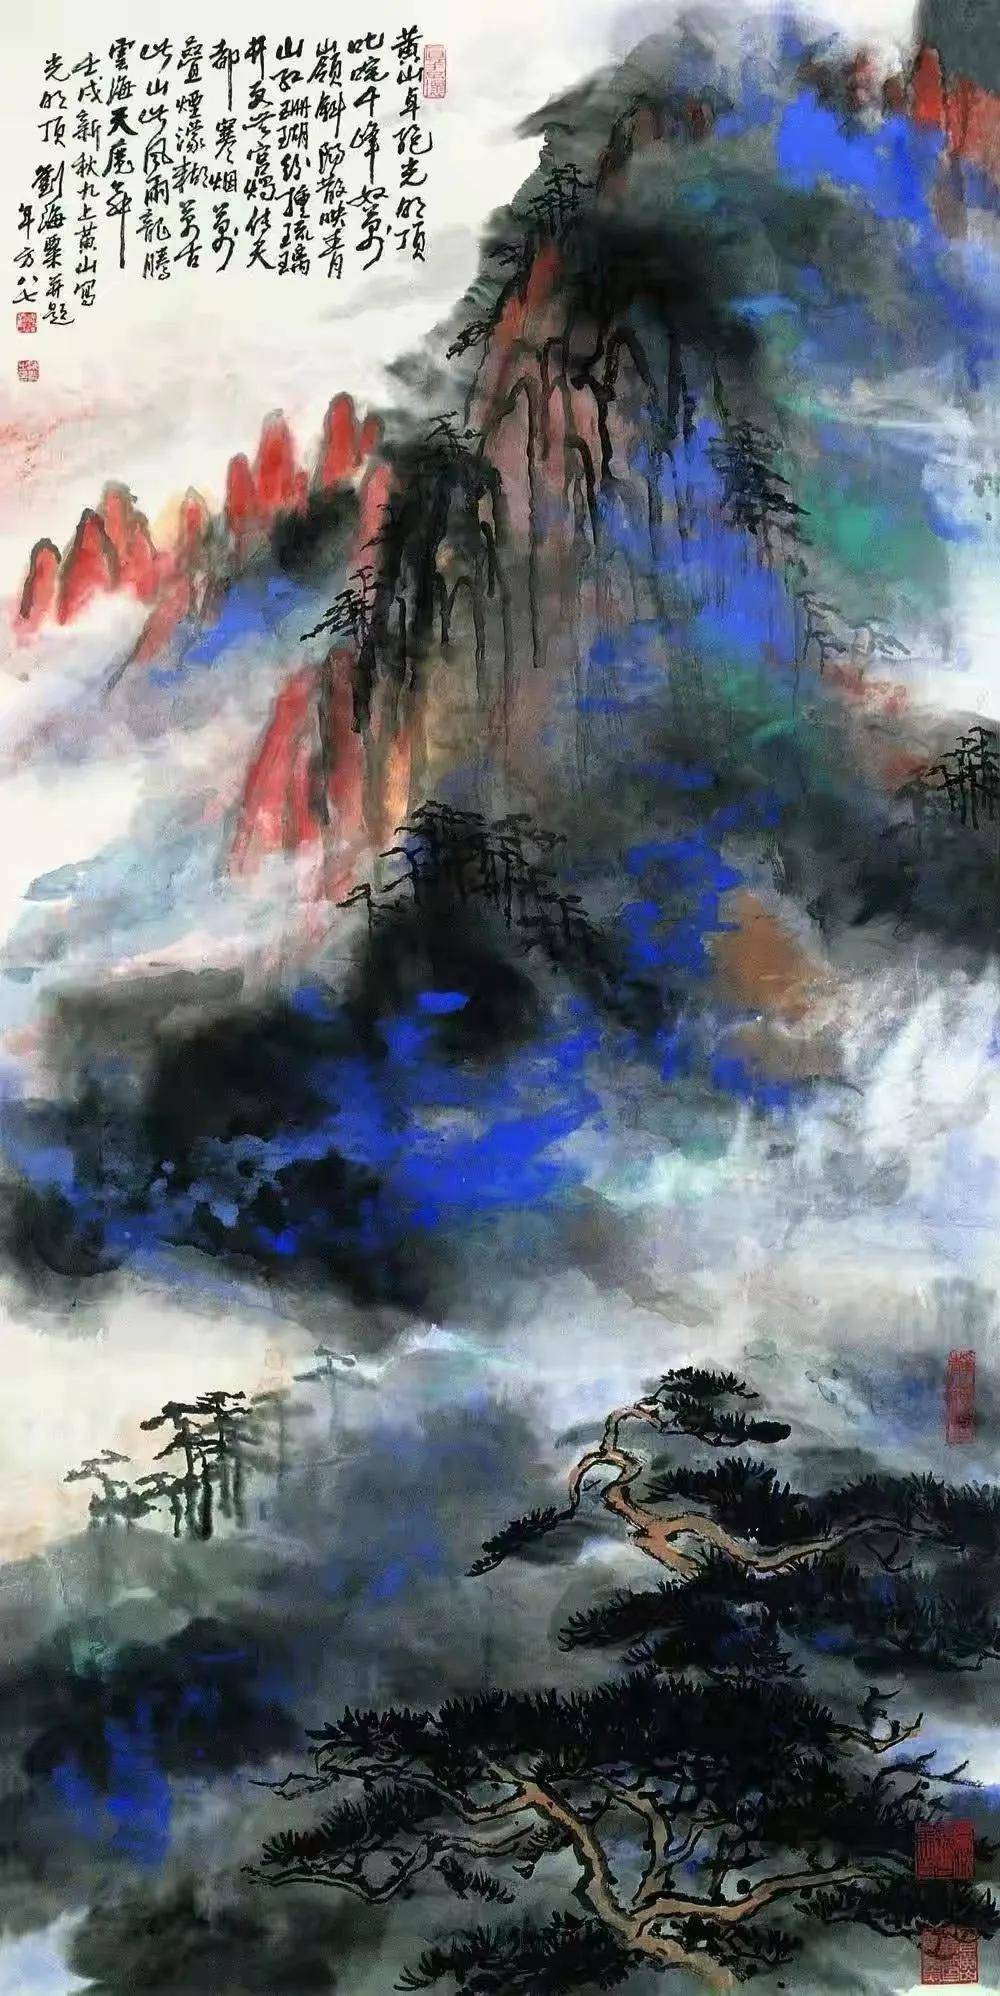 1988年93岁的刘海粟第10次登黄山,留下了备受关注与争议的泼彩画